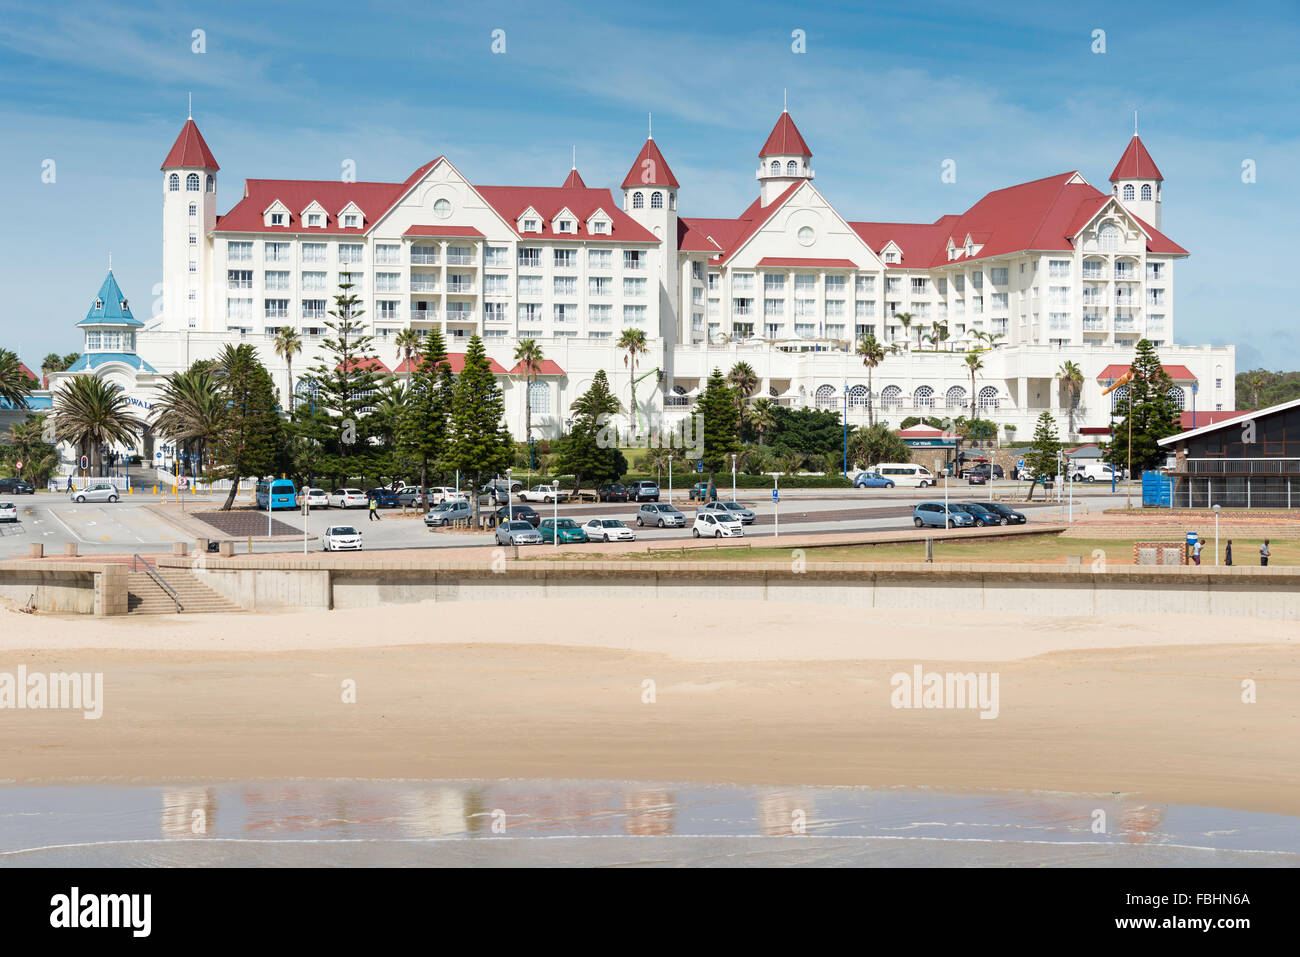 Der Boardwalk Casino und Entertainment-Komplex, Summerstrand, Port Elizabeth, Provinz Ostkap, Südafrika Stockfoto